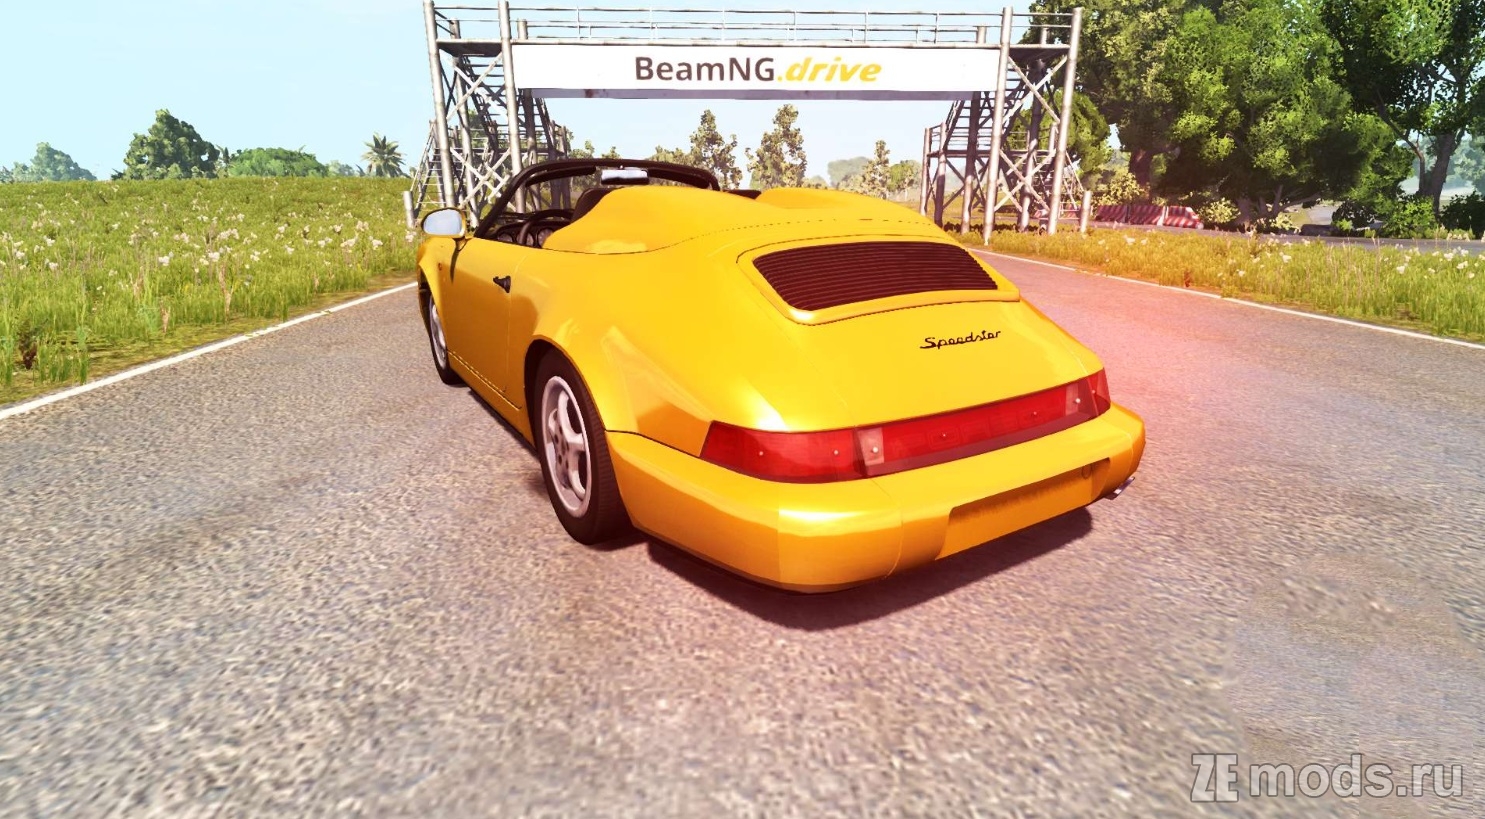 Мод Porsche 911 Carrera 2 Speedster для BeamNG.drive